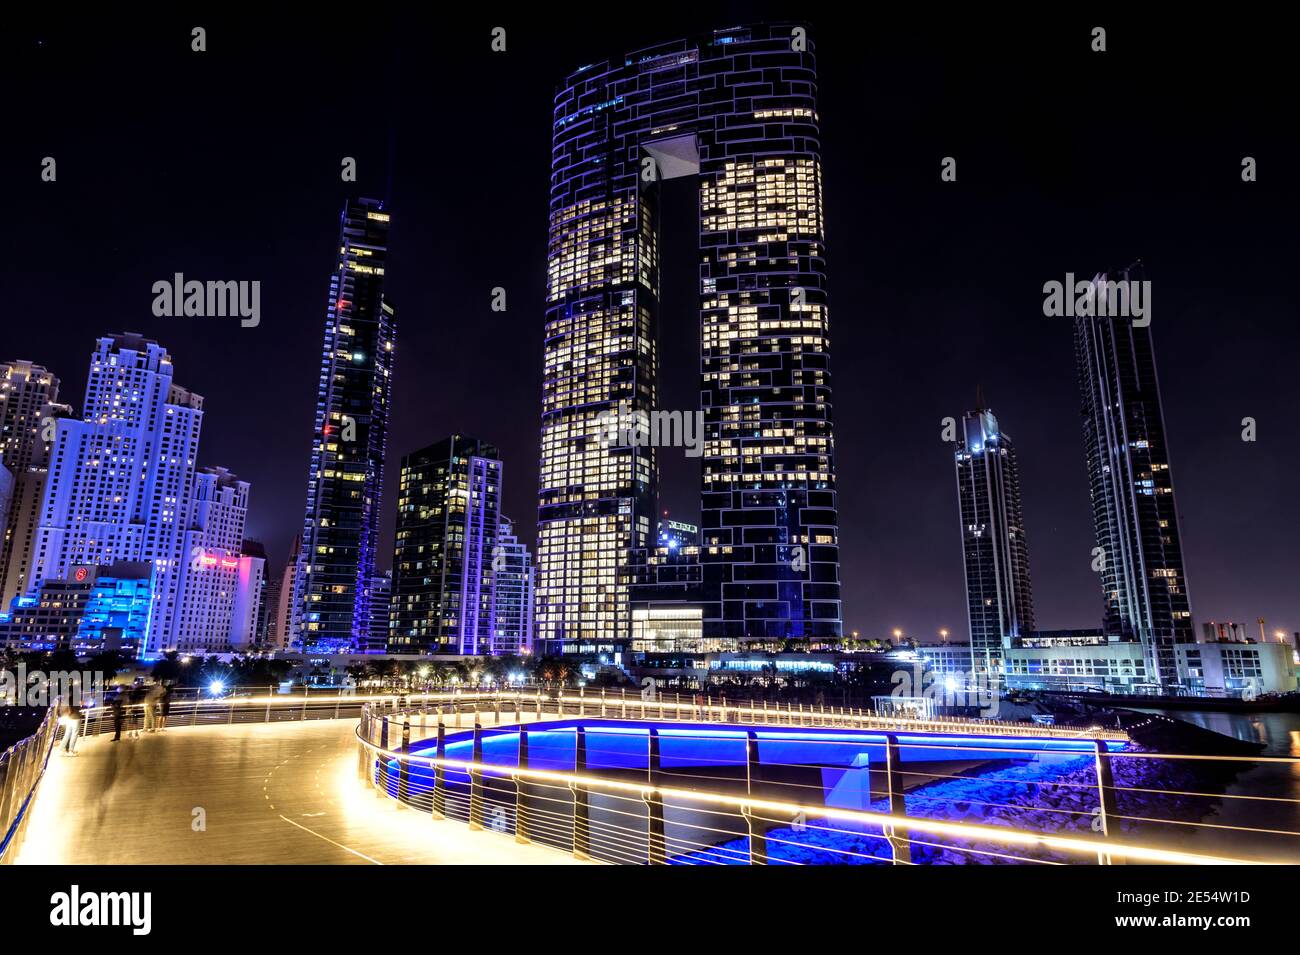 Hermosa vista nocturna de los rascacielos iluminados en el dubai puerto deportivo capturado desde el puente del muelle que conecta Ain Dubai en islas de agua azul Foto de stock